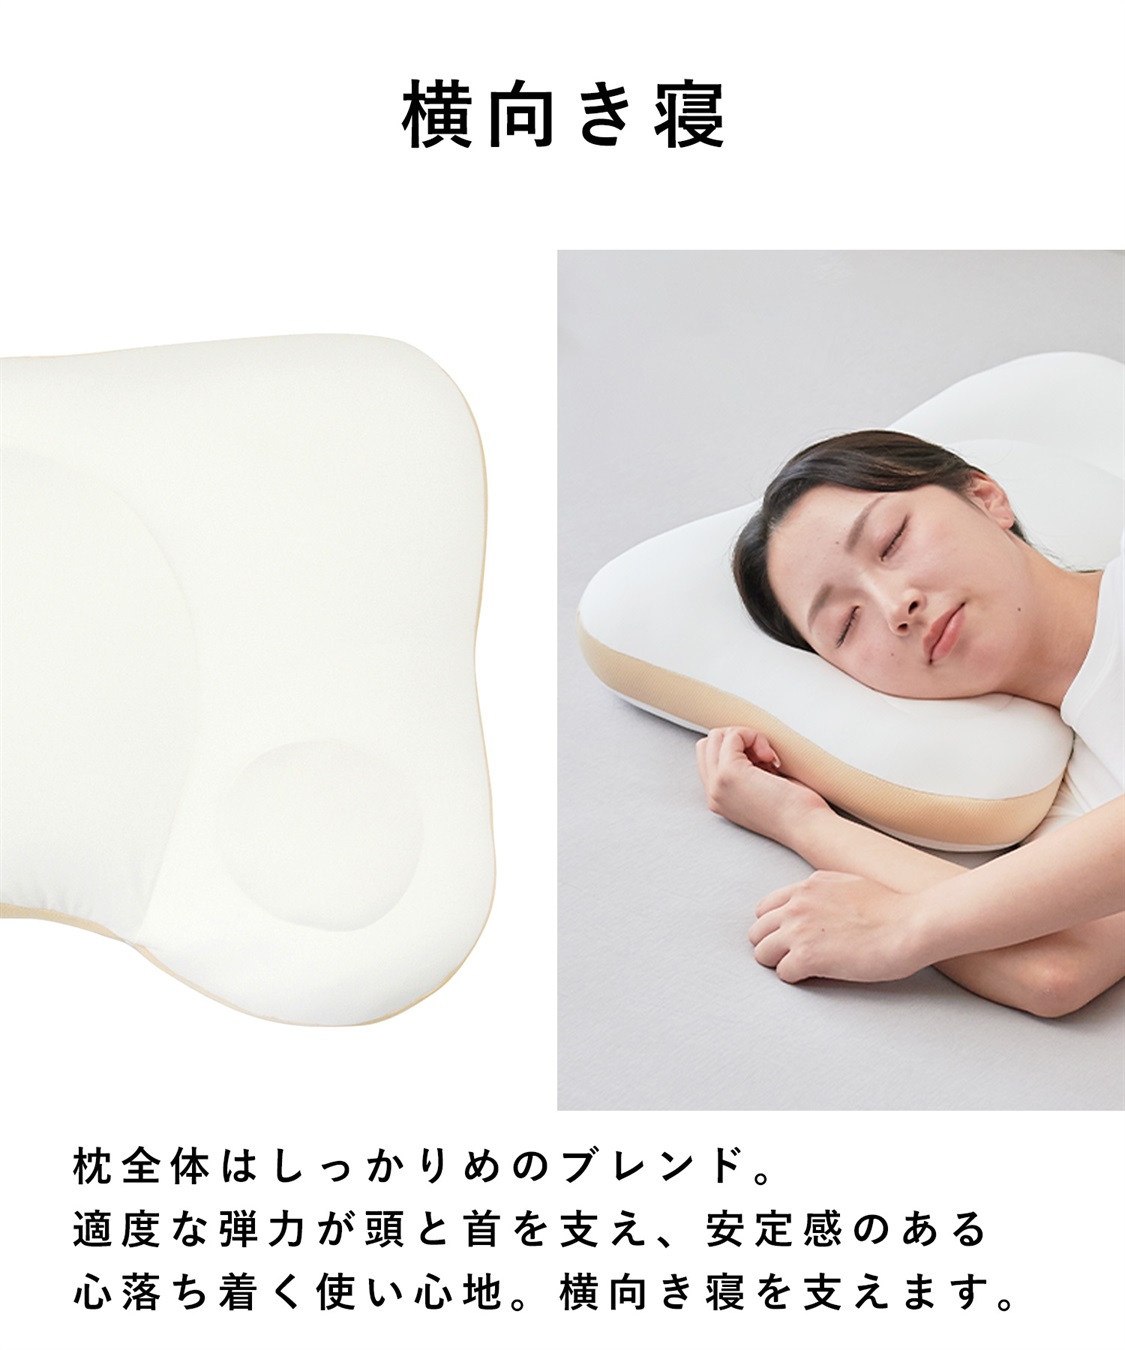 NeOchi Pillow 枕 低反発 丸洗い可 洗濯ネット付き 日本製 - 枕